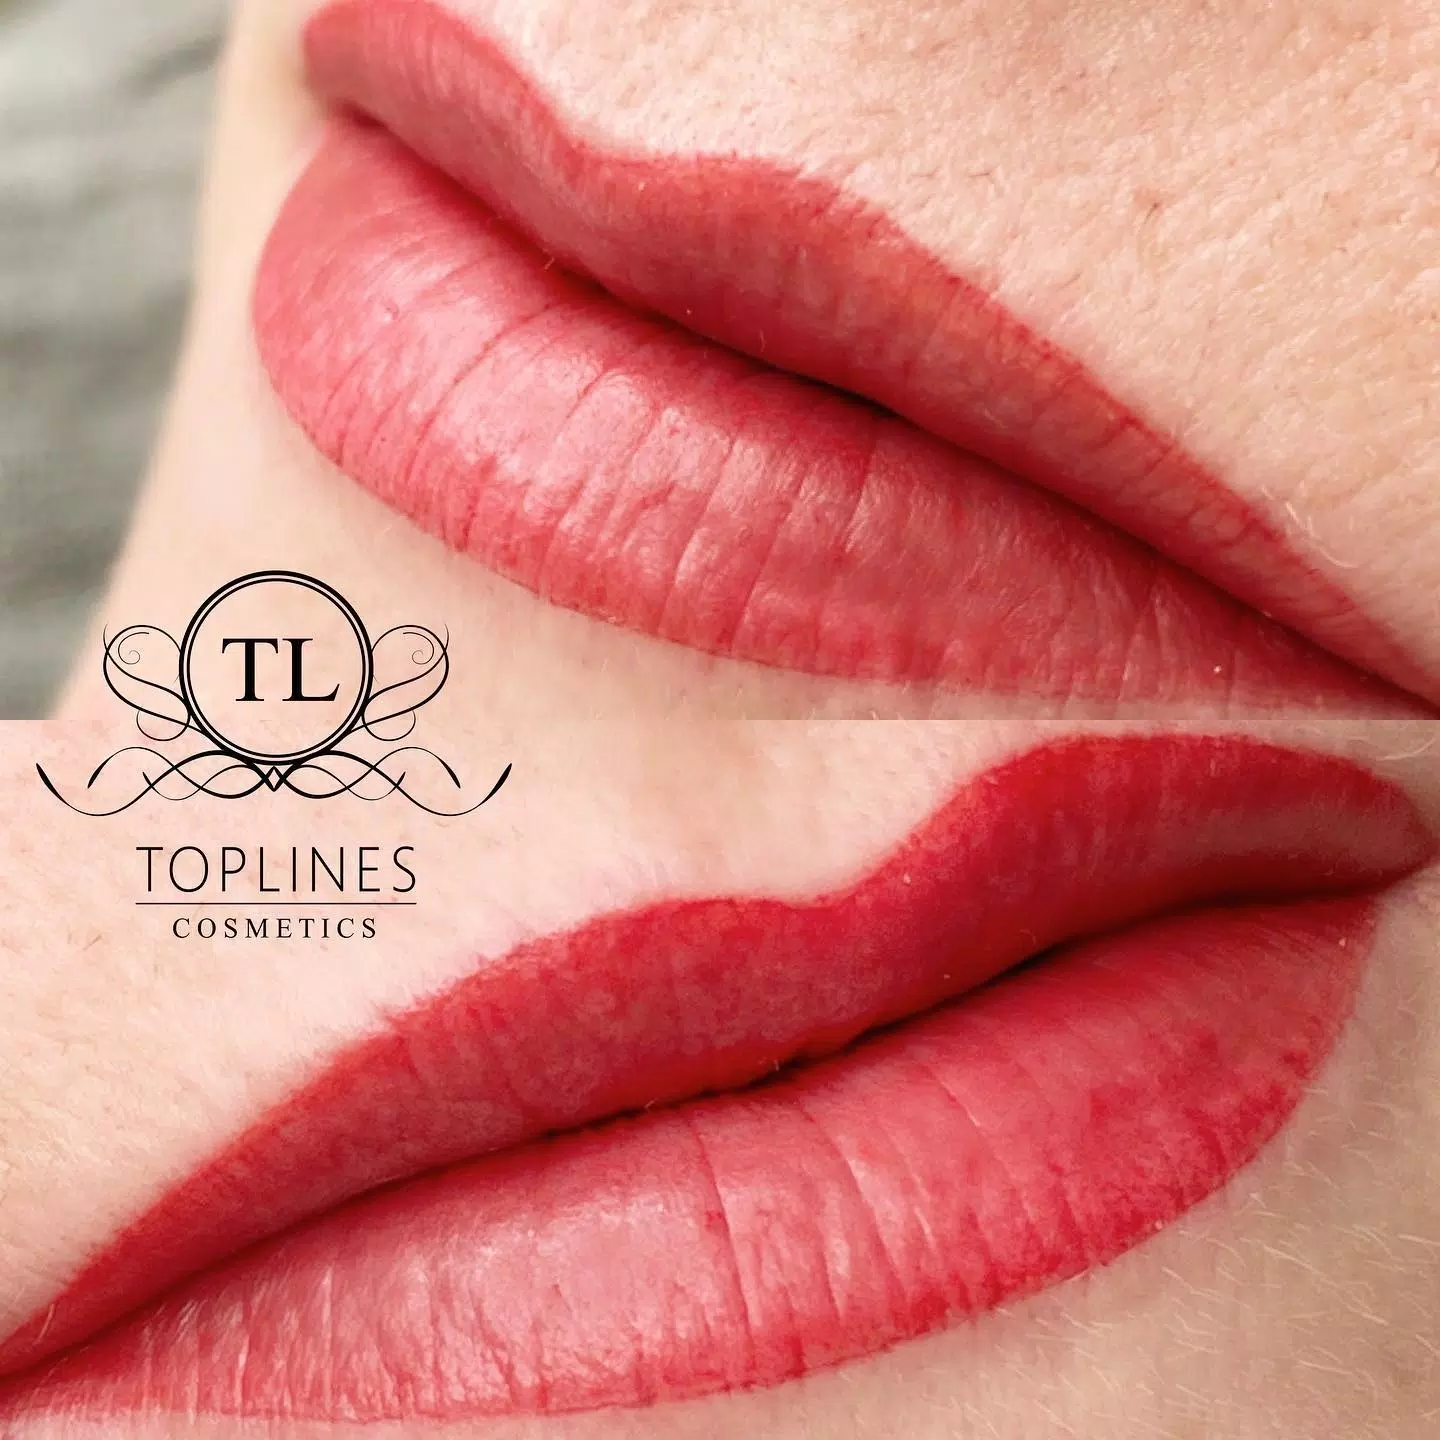 💋💋💋💋💋💋💋💋💋💋 #lips Die Farbe wirkt auf dem Bild sehr stark rot. Nach der Abheilung verliert die Farbe ca. 30-40% an Wirkung . Hier haben wir ein frisches Erdbeerrot verwendet. 🍓🍓🍓🍓🍓🍓i Love it #lippenpigmentierung #lips #lippmu #wunderful #nice #pigmentierung #affolternamalbis #toplinescosmetics #onlinebooking